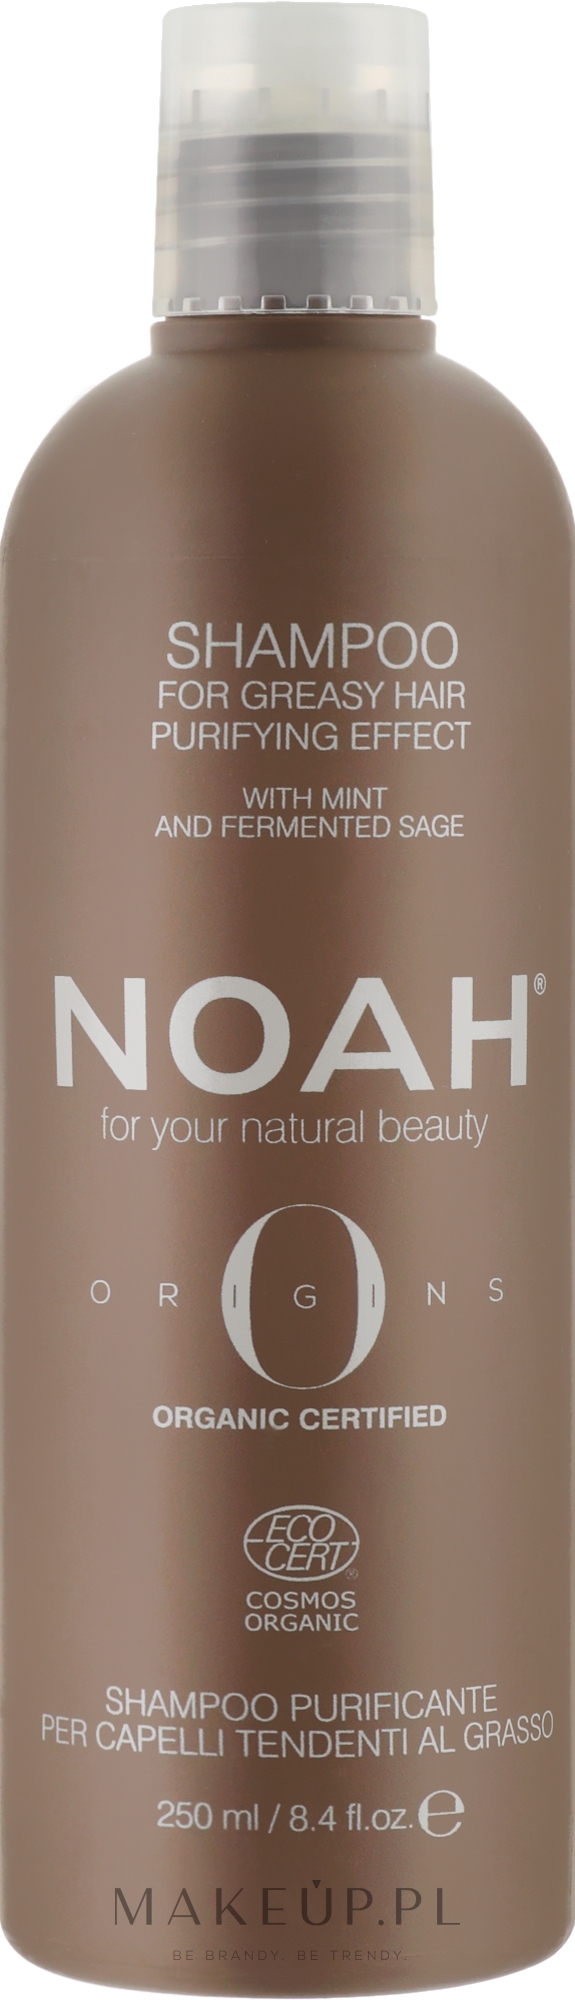 Oczyszczający szampon do włosów - Noah Origins Purifying Shampoo For Greasy Hair — Zdjęcie 250 ml